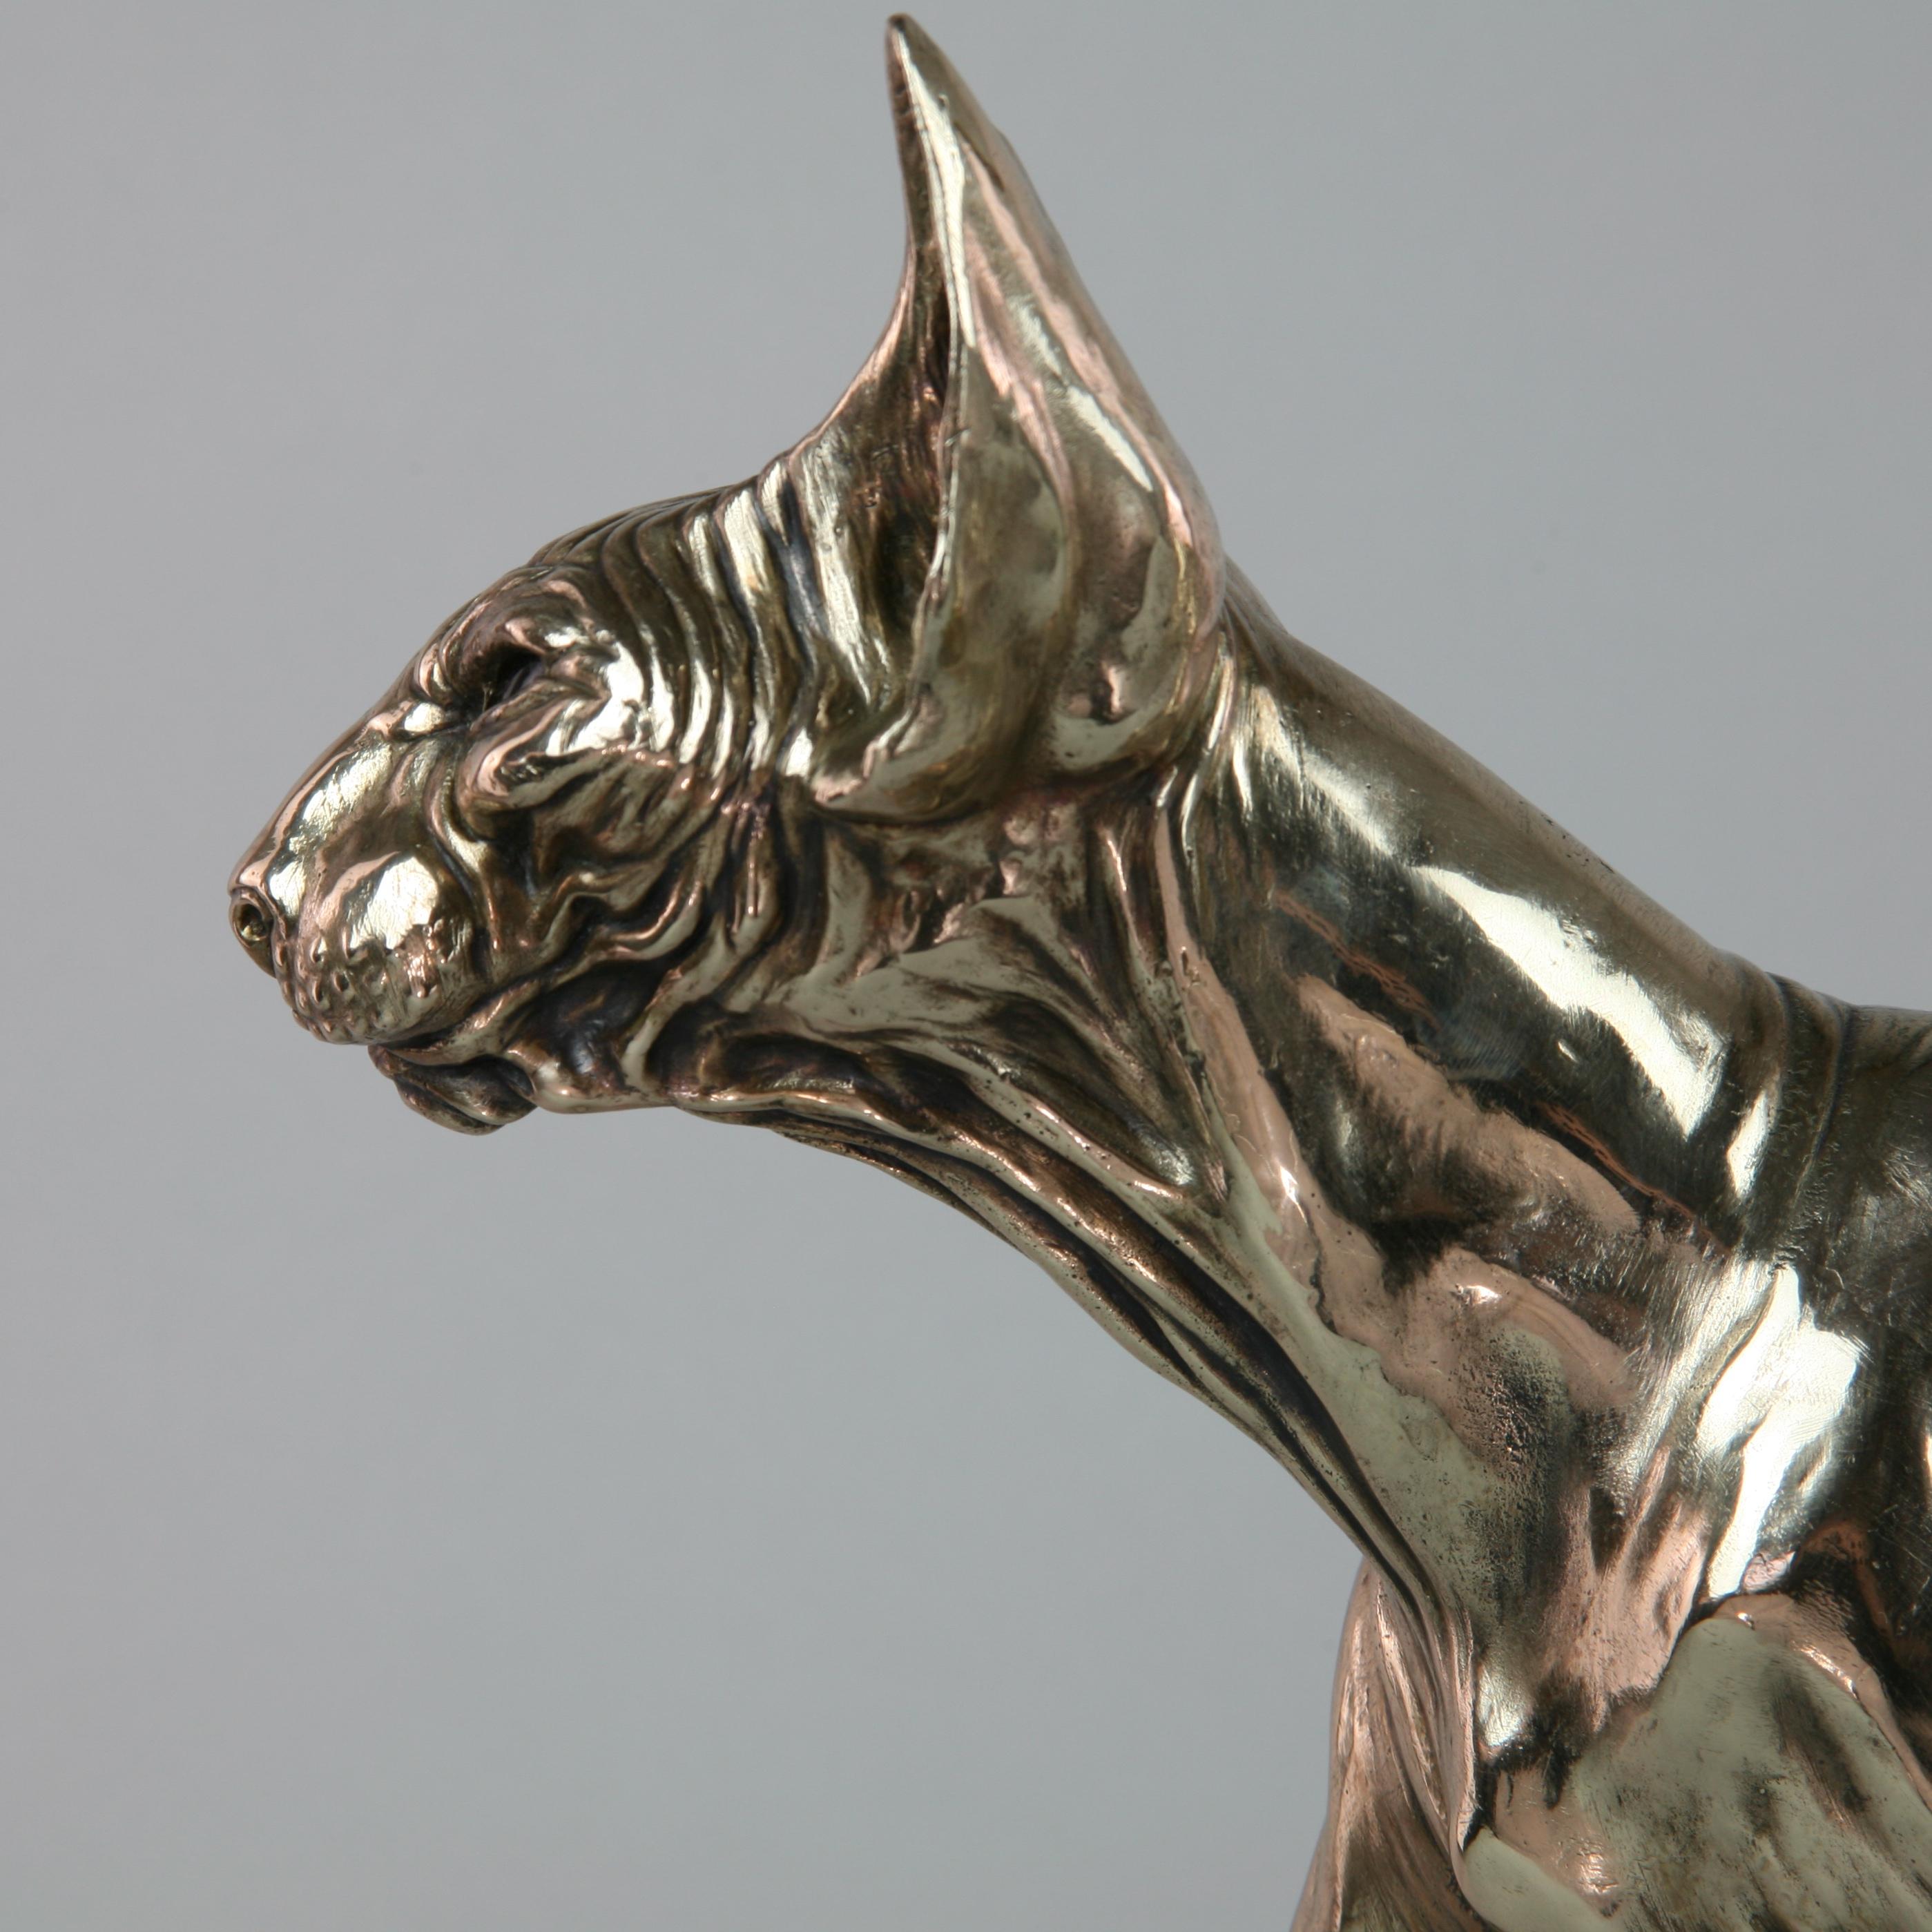 Sphynx Cat II - sculpture wildlife animal limited edition bronze modern marine 1